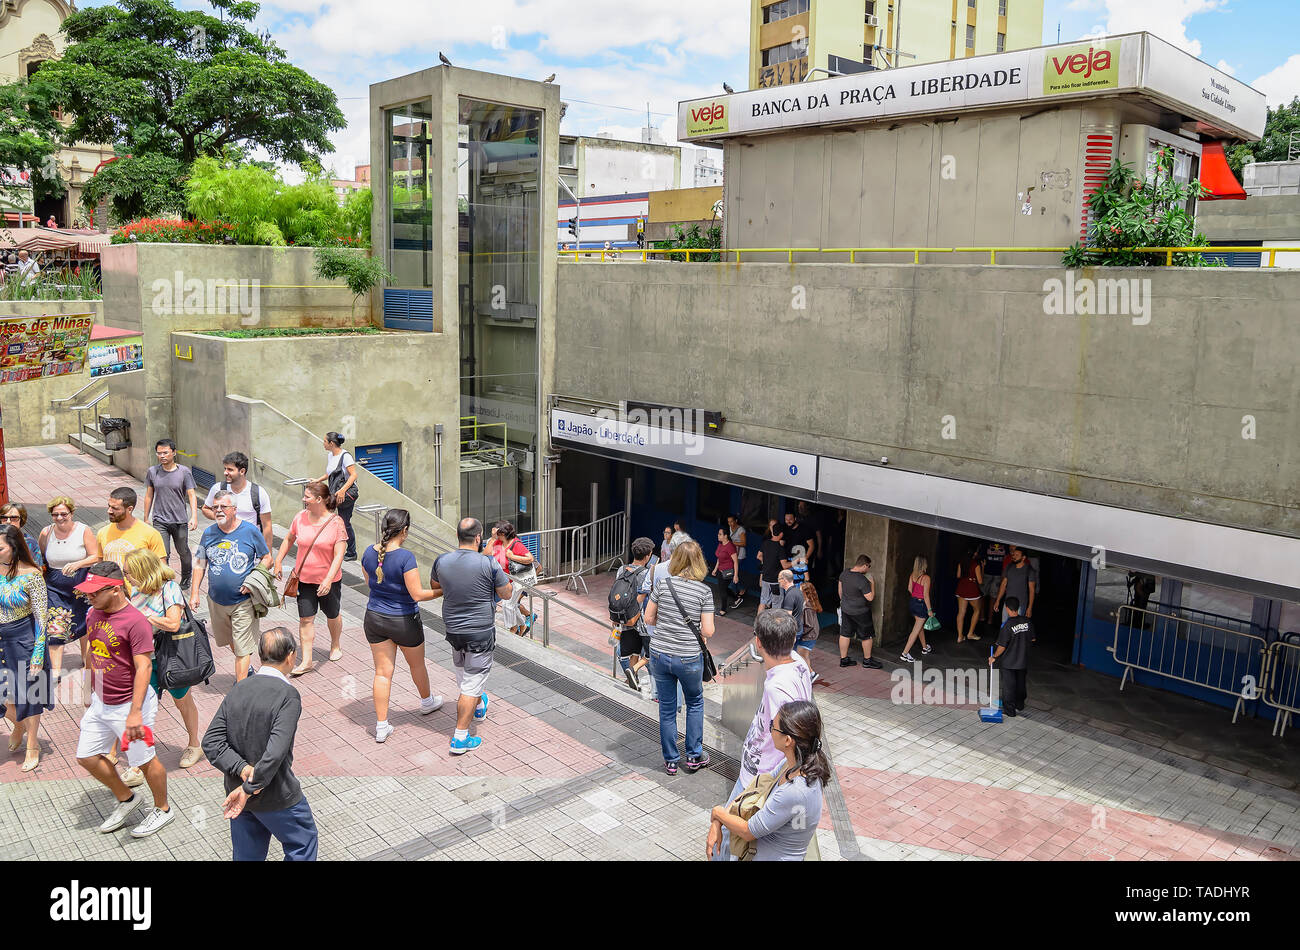 Sao Paulo, SP, BRÉSIL - Mars 03, 2019 : Les gens de la station de métro au quartier Liberdade. Japao Station - Liberdade (Japon - Liberty), libert Banque D'Images